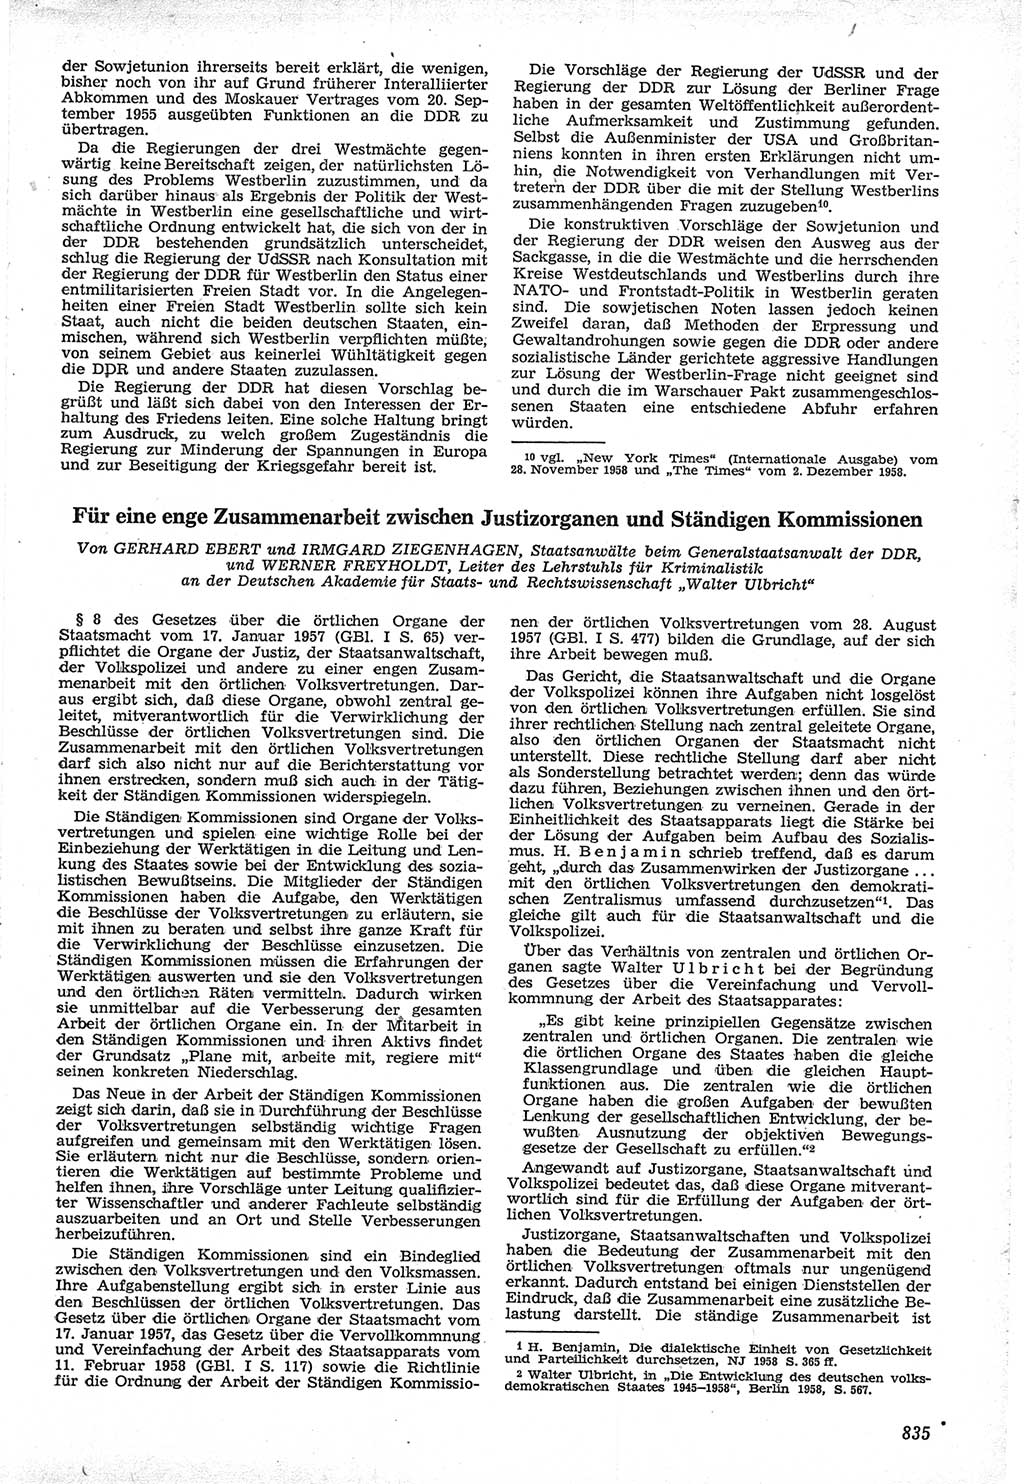 Neue Justiz (NJ), Zeitschrift für Recht und Rechtswissenschaft [Deutsche Demokratische Republik (DDR)], 12. Jahrgang 1958, Seite 835 (NJ DDR 1958, S. 835)